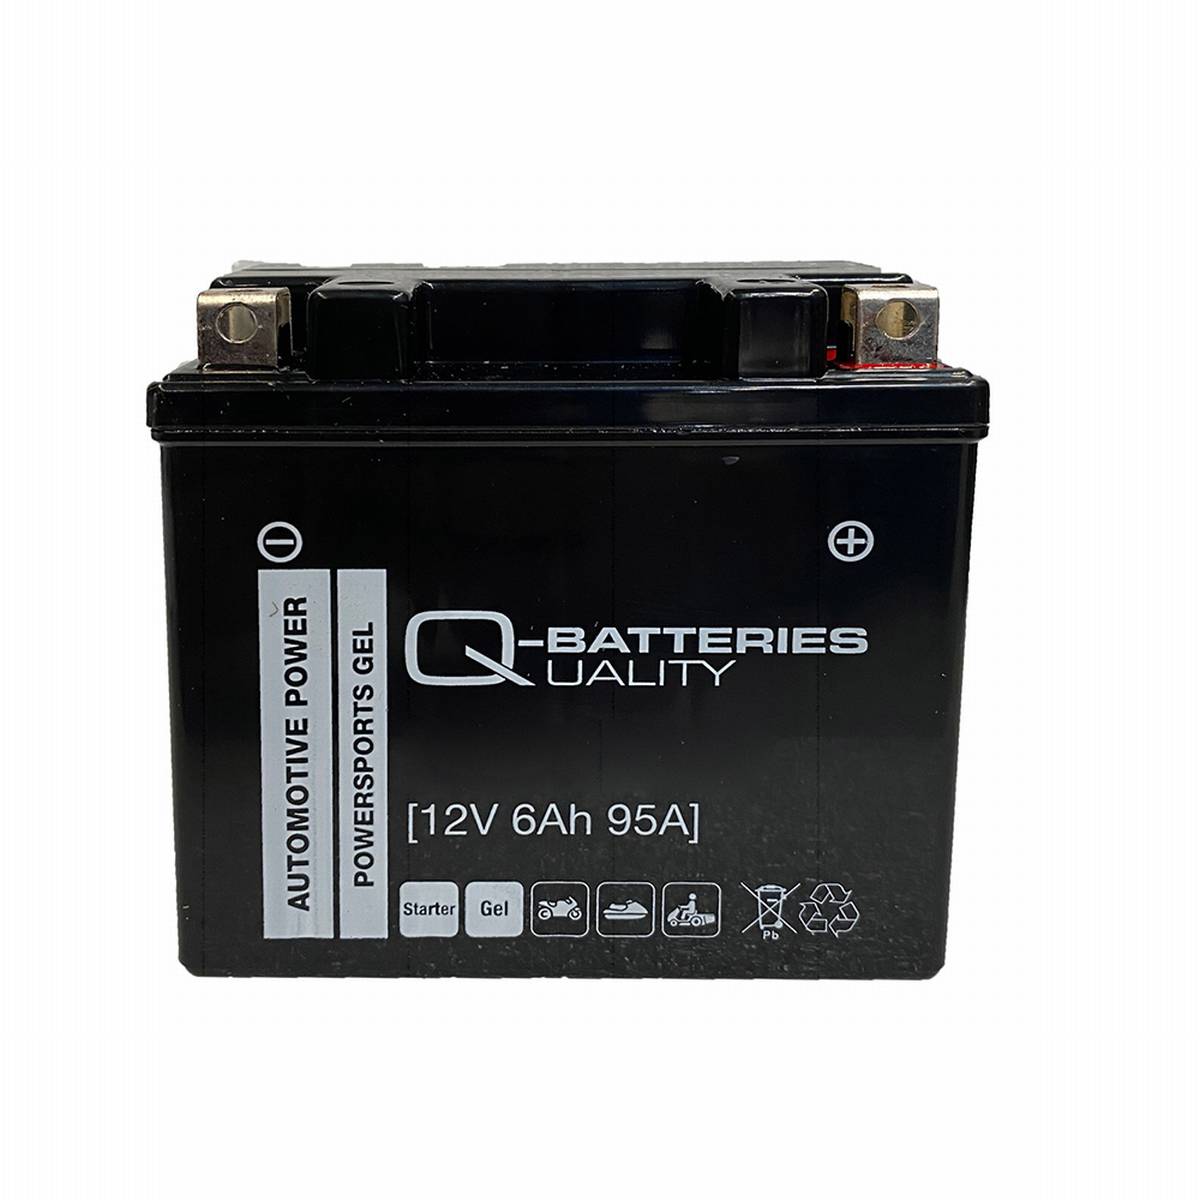 Q-Batteries Motorradbatterie 7-S Gel 57902 12V 6Ah 95A